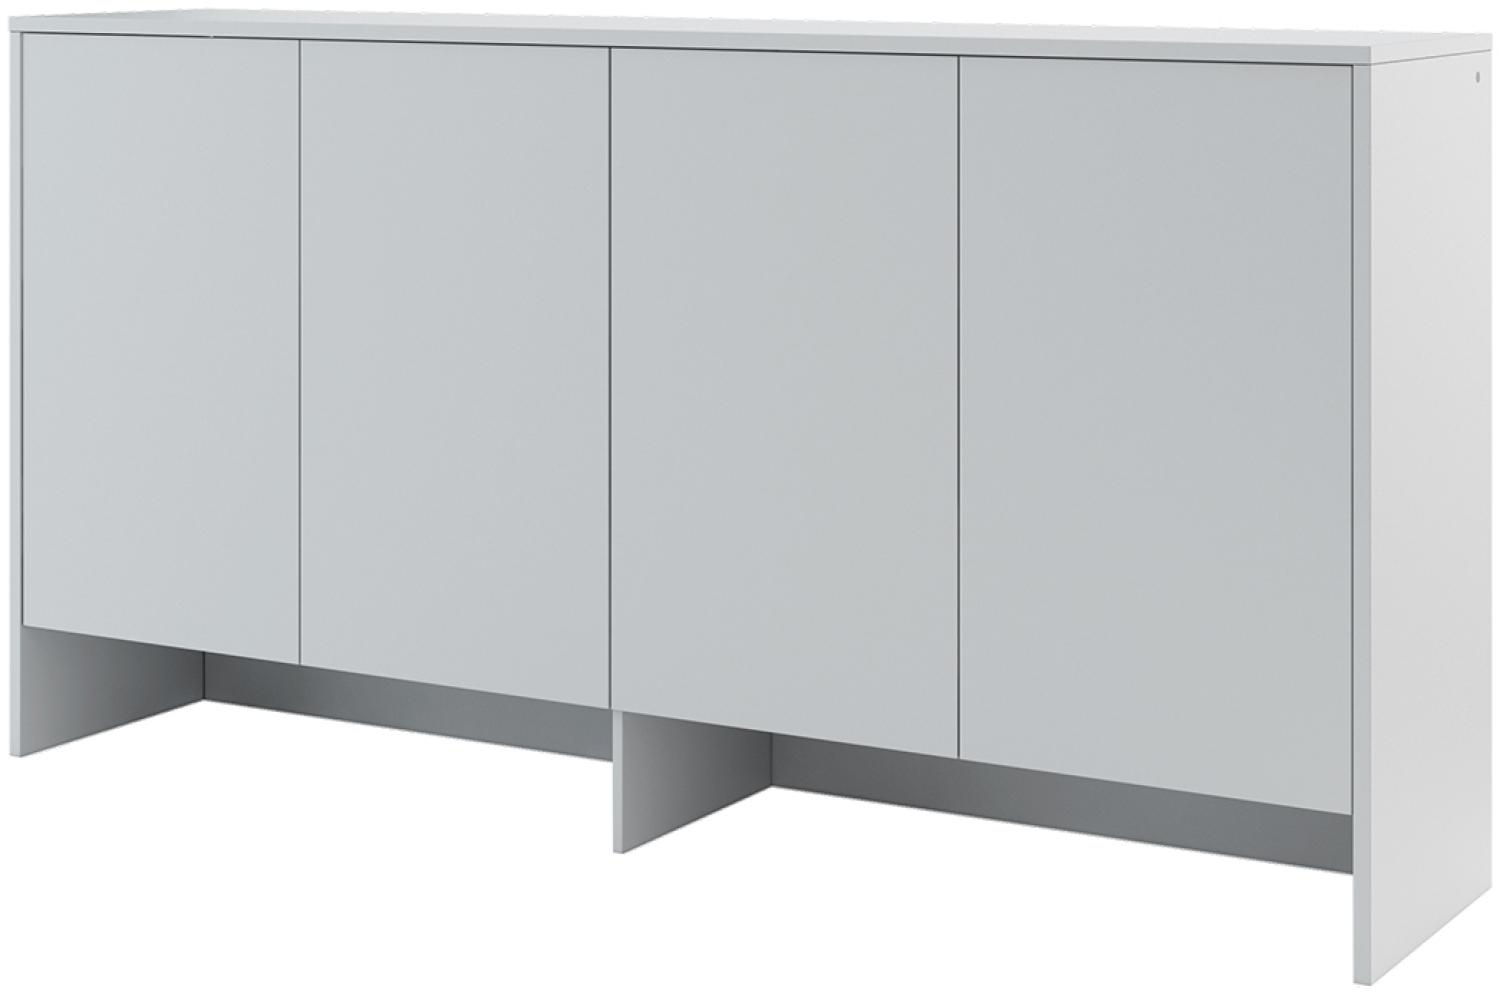 MEBLINI Hängeschrank für Horizontal Schrankbett Bed Concept - Wandschrank mit Ablagen und Fächern - Wandregal - BC-11 für 90x200 Horizontal - Grau Matt Bild 1